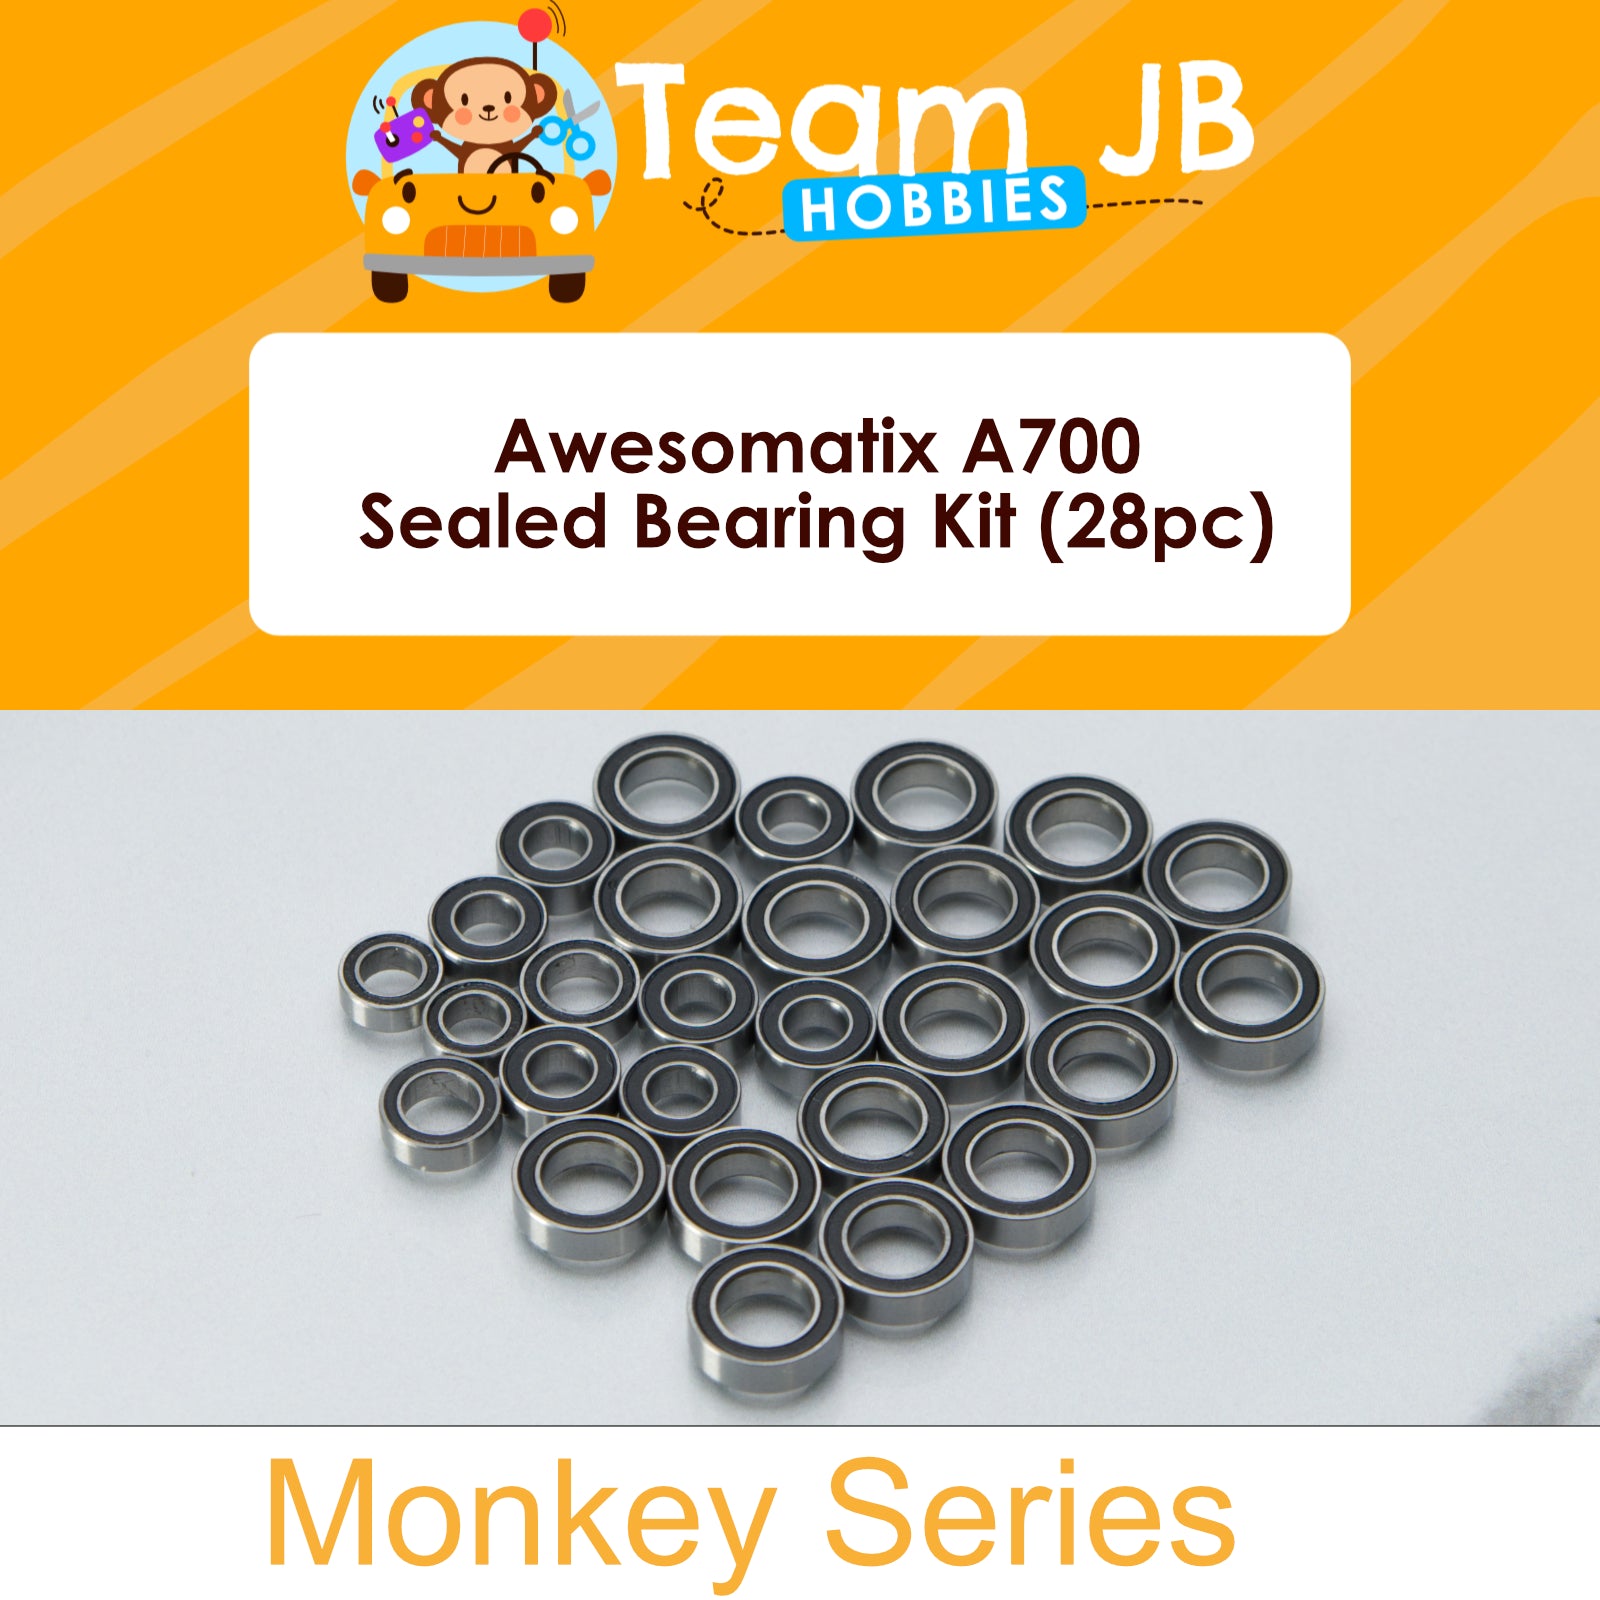 Awesomatix A700 - Sealed Bearing Kit